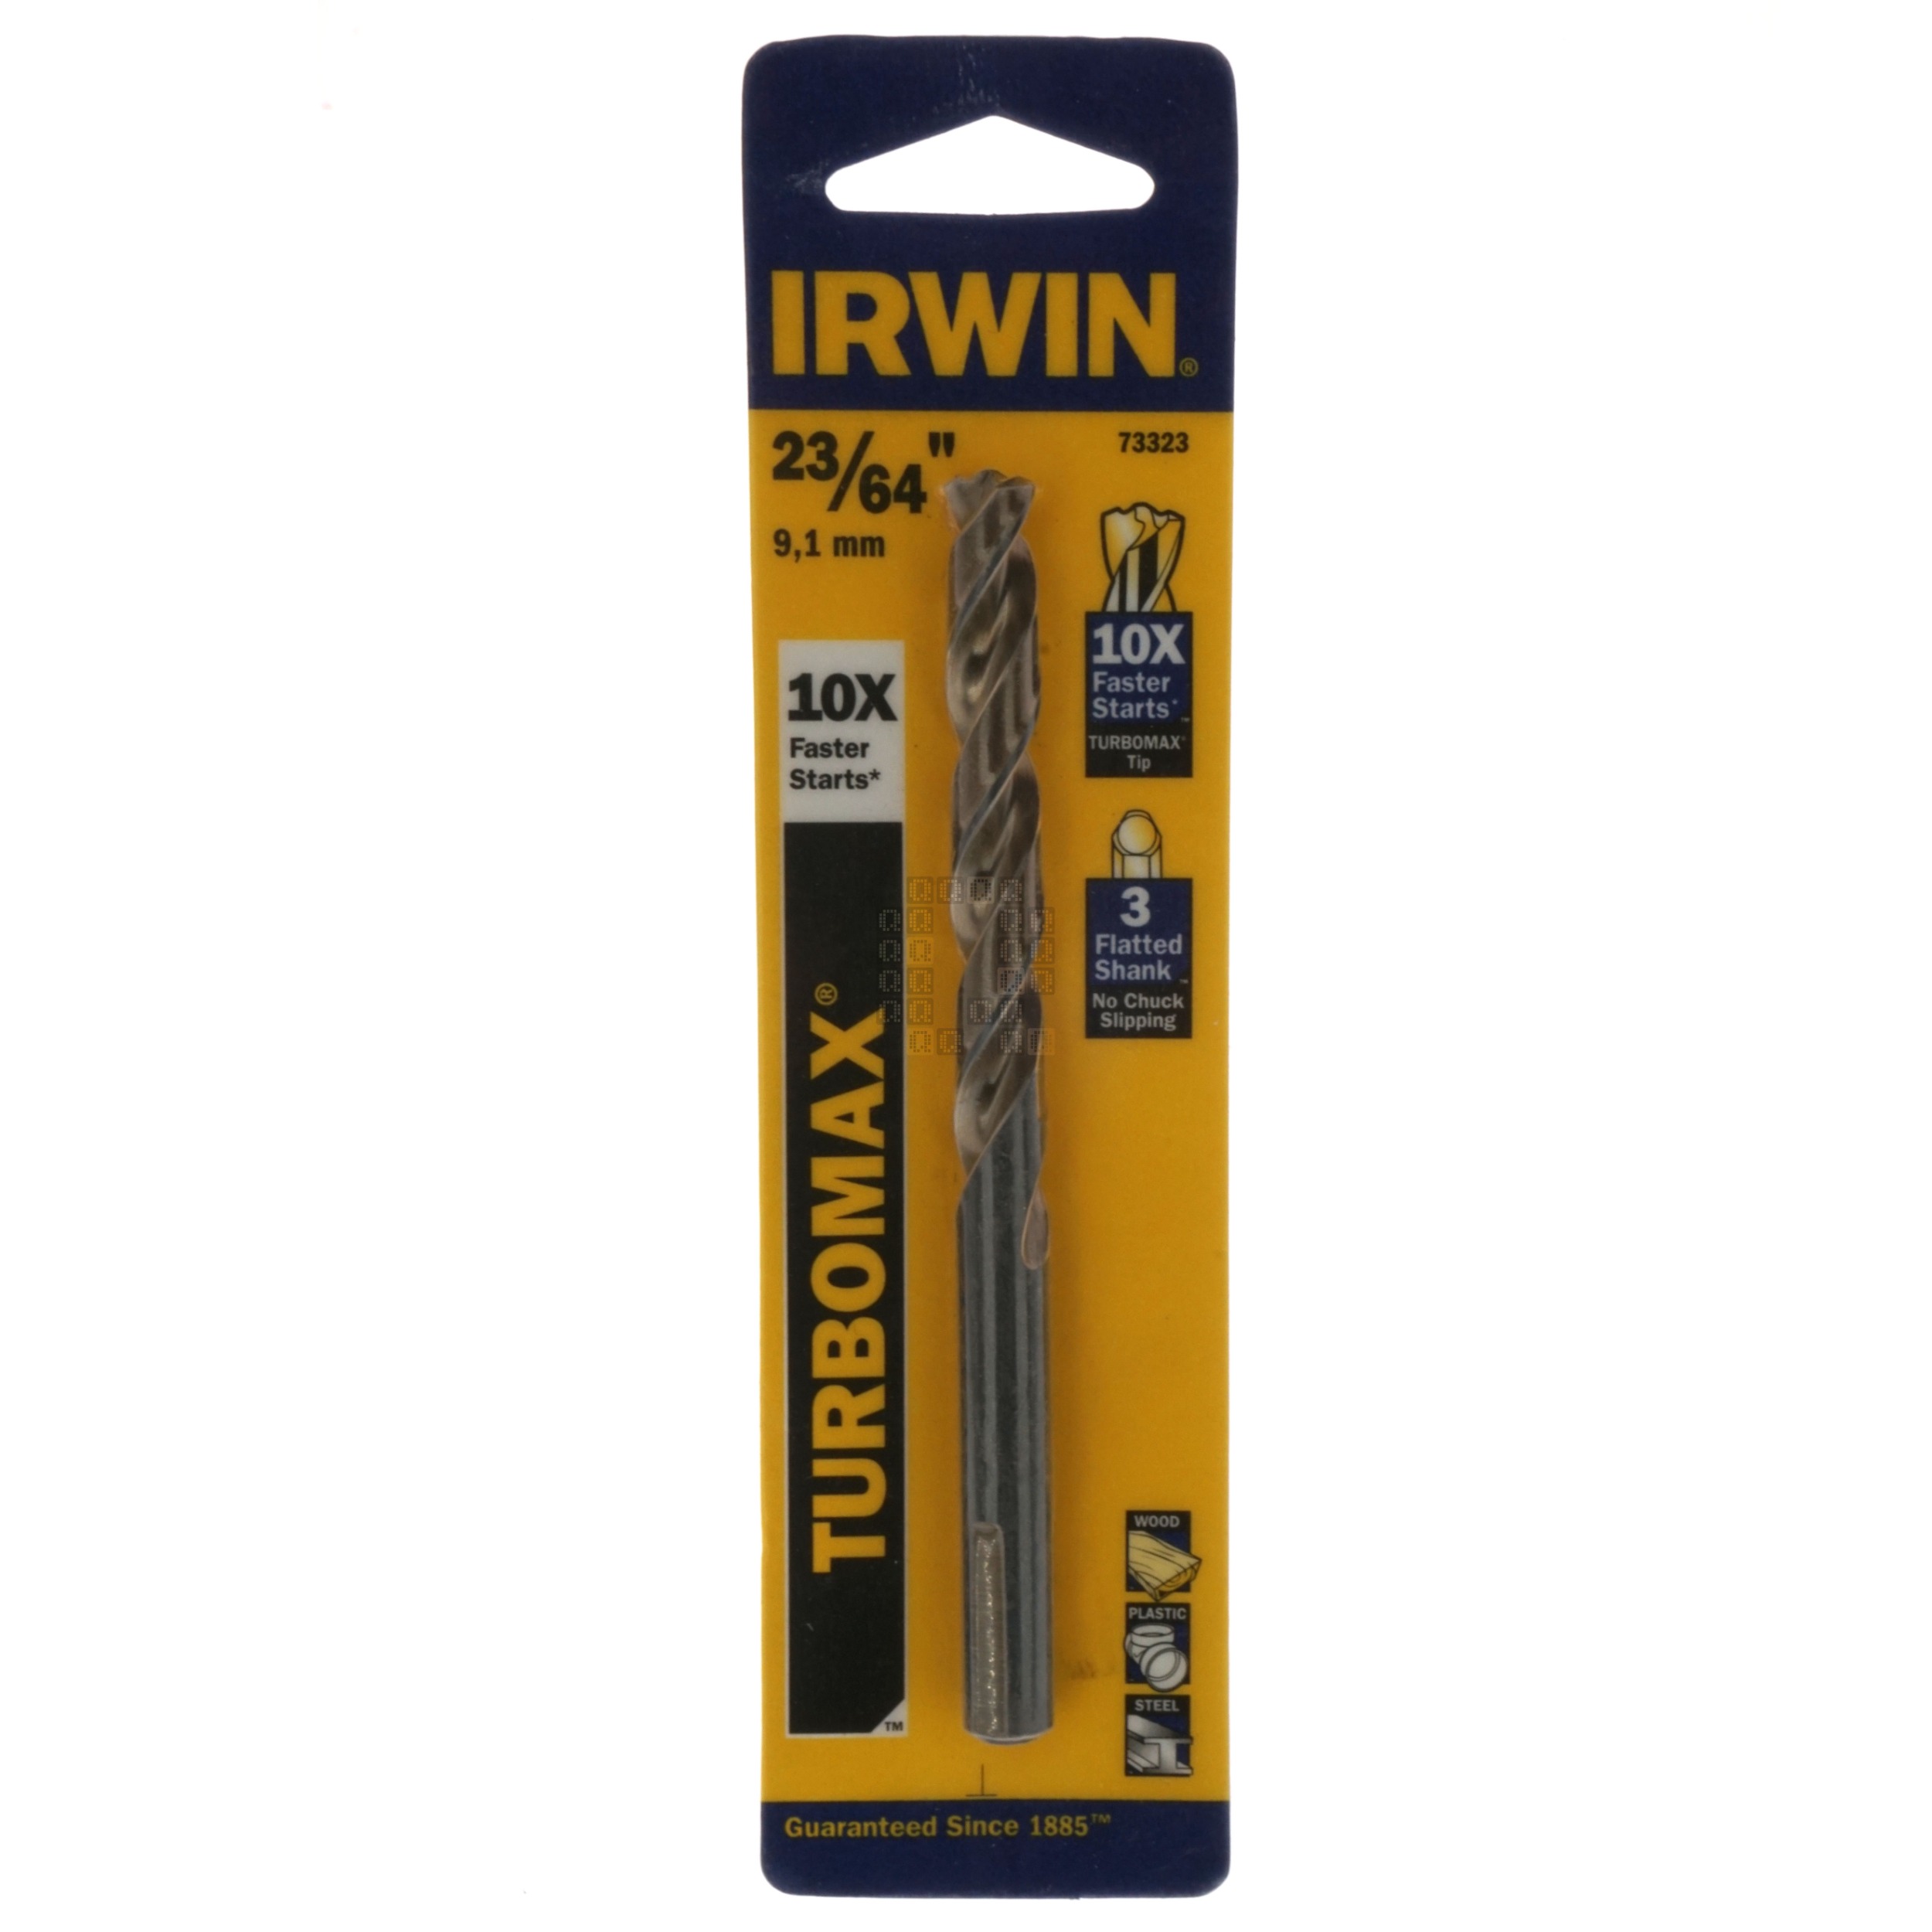 Irwin Industrial Tools 73323 Turbomax 23/64" Drill Bit